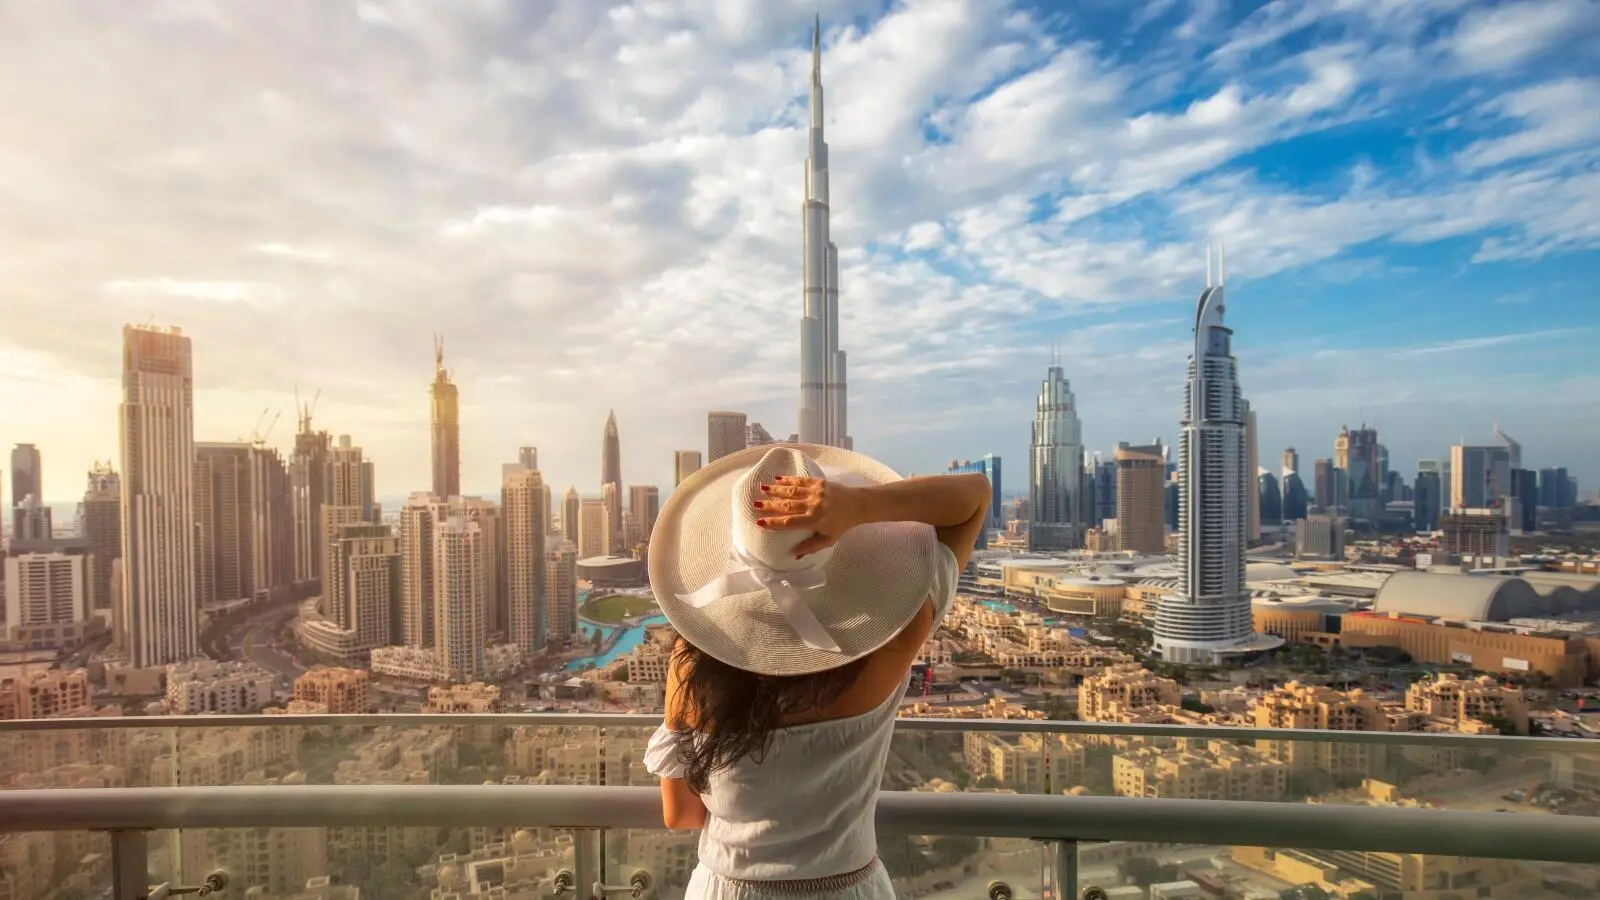 دبي تتصدر للعام الثالث على التوالي كأفضل وجهة سياحية في الشرق الأوسط وتحتل المركز الثاني عالميًا لعام 2023